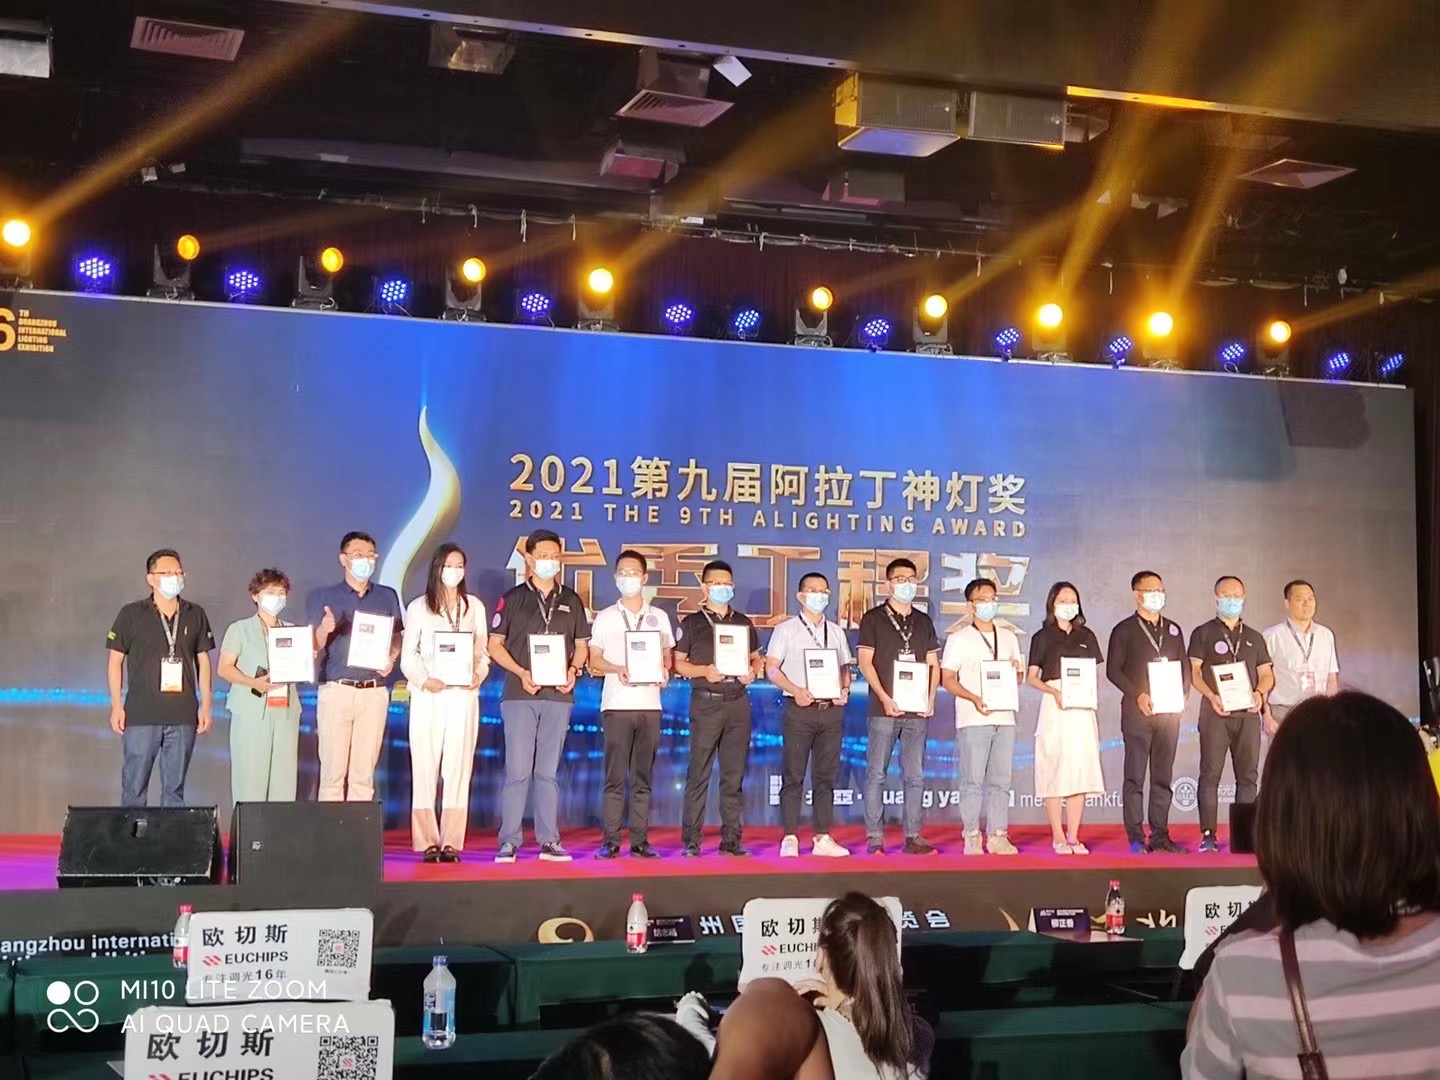 廣州黃埔新一代信息技術創新價值園泛光照明工程榮獲第26屆廣州國際照明展覽會阿拉丁神燈獎--優秀工程獎